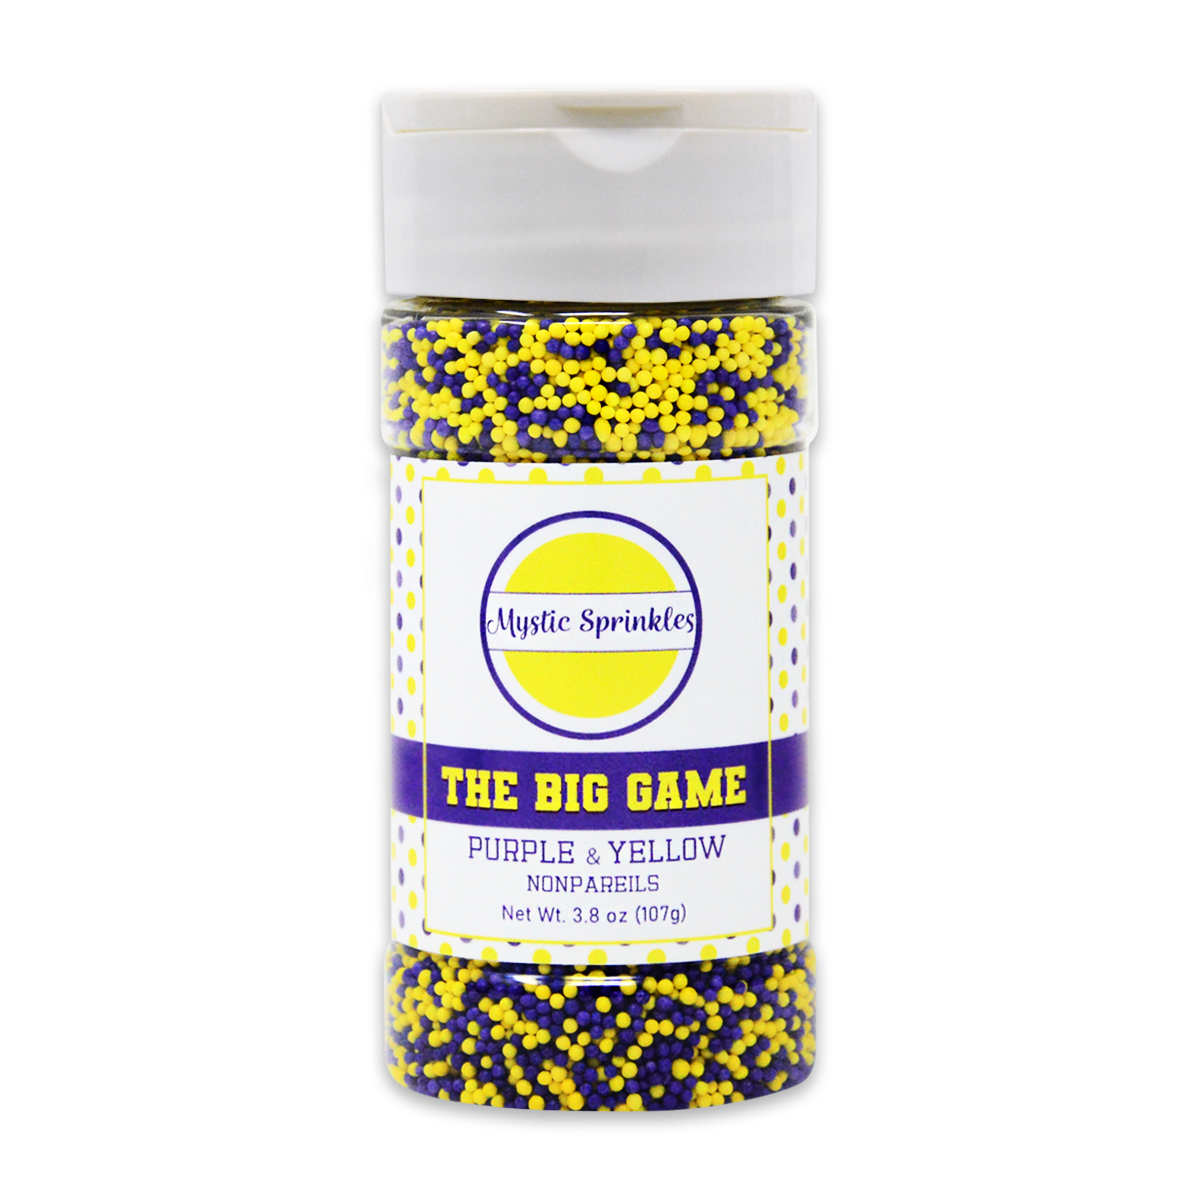 The Big Game: Purple & Yellow Nonpareil Mix 3.8oz